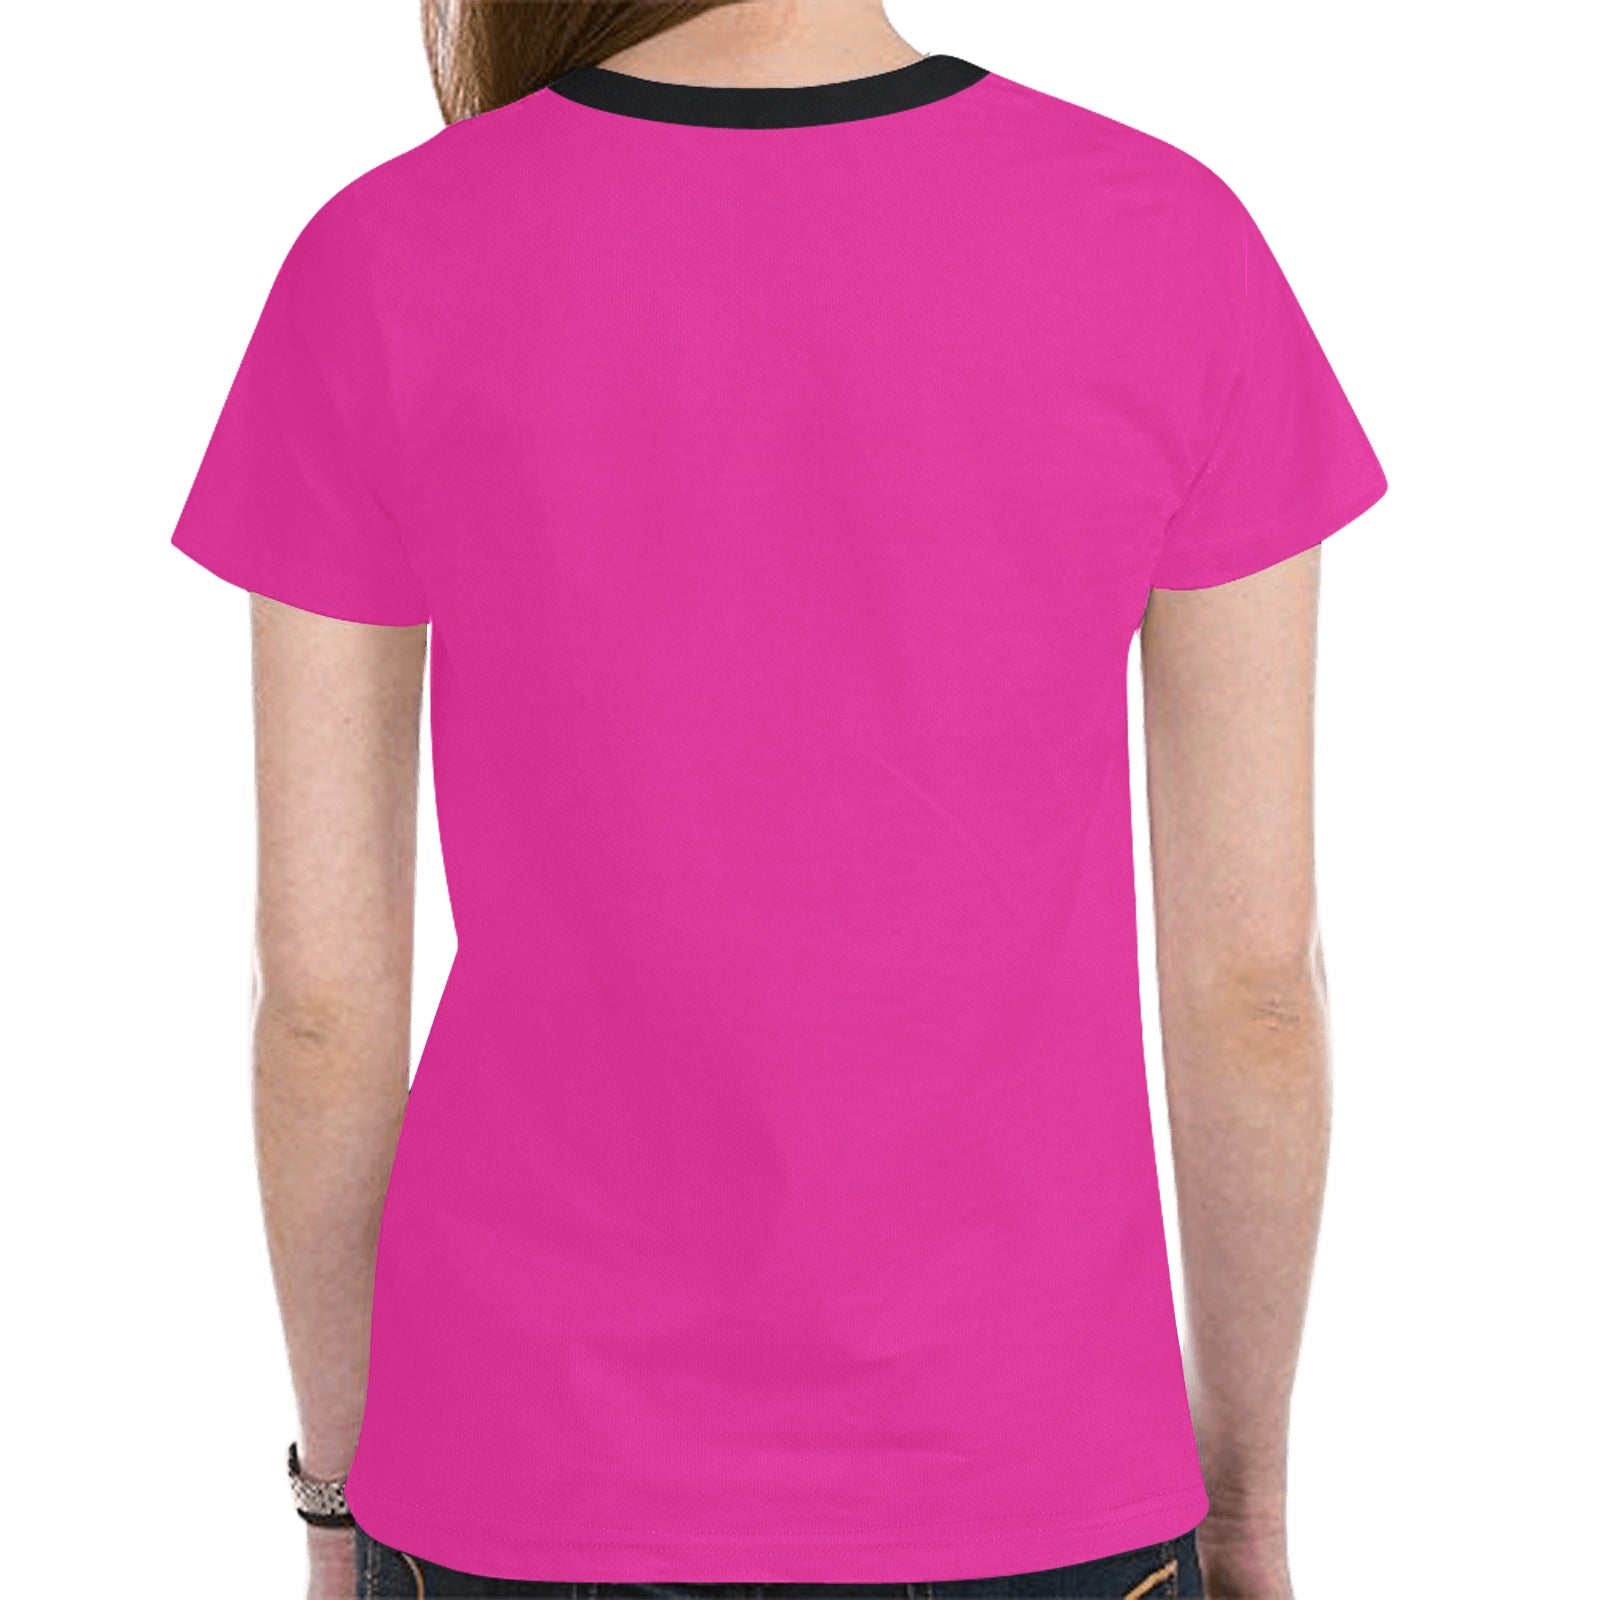 Horse Spirit Guide (Pink) T-shirt for Women